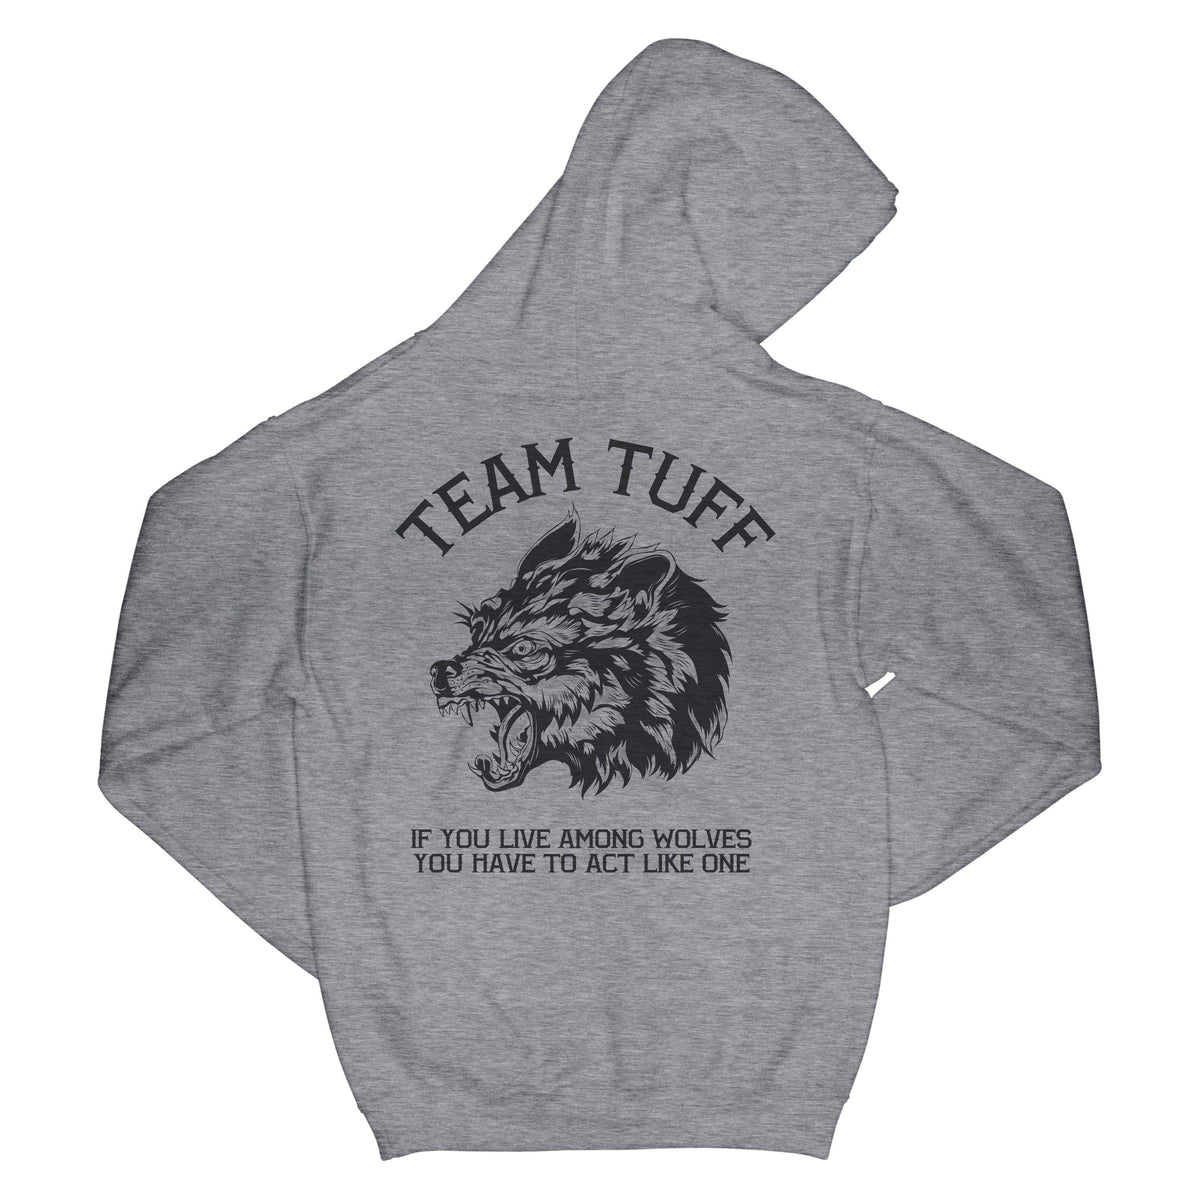 Team TUFF Wolves Club Hooded Sweatshirt XS / Gray TuffWraps.com